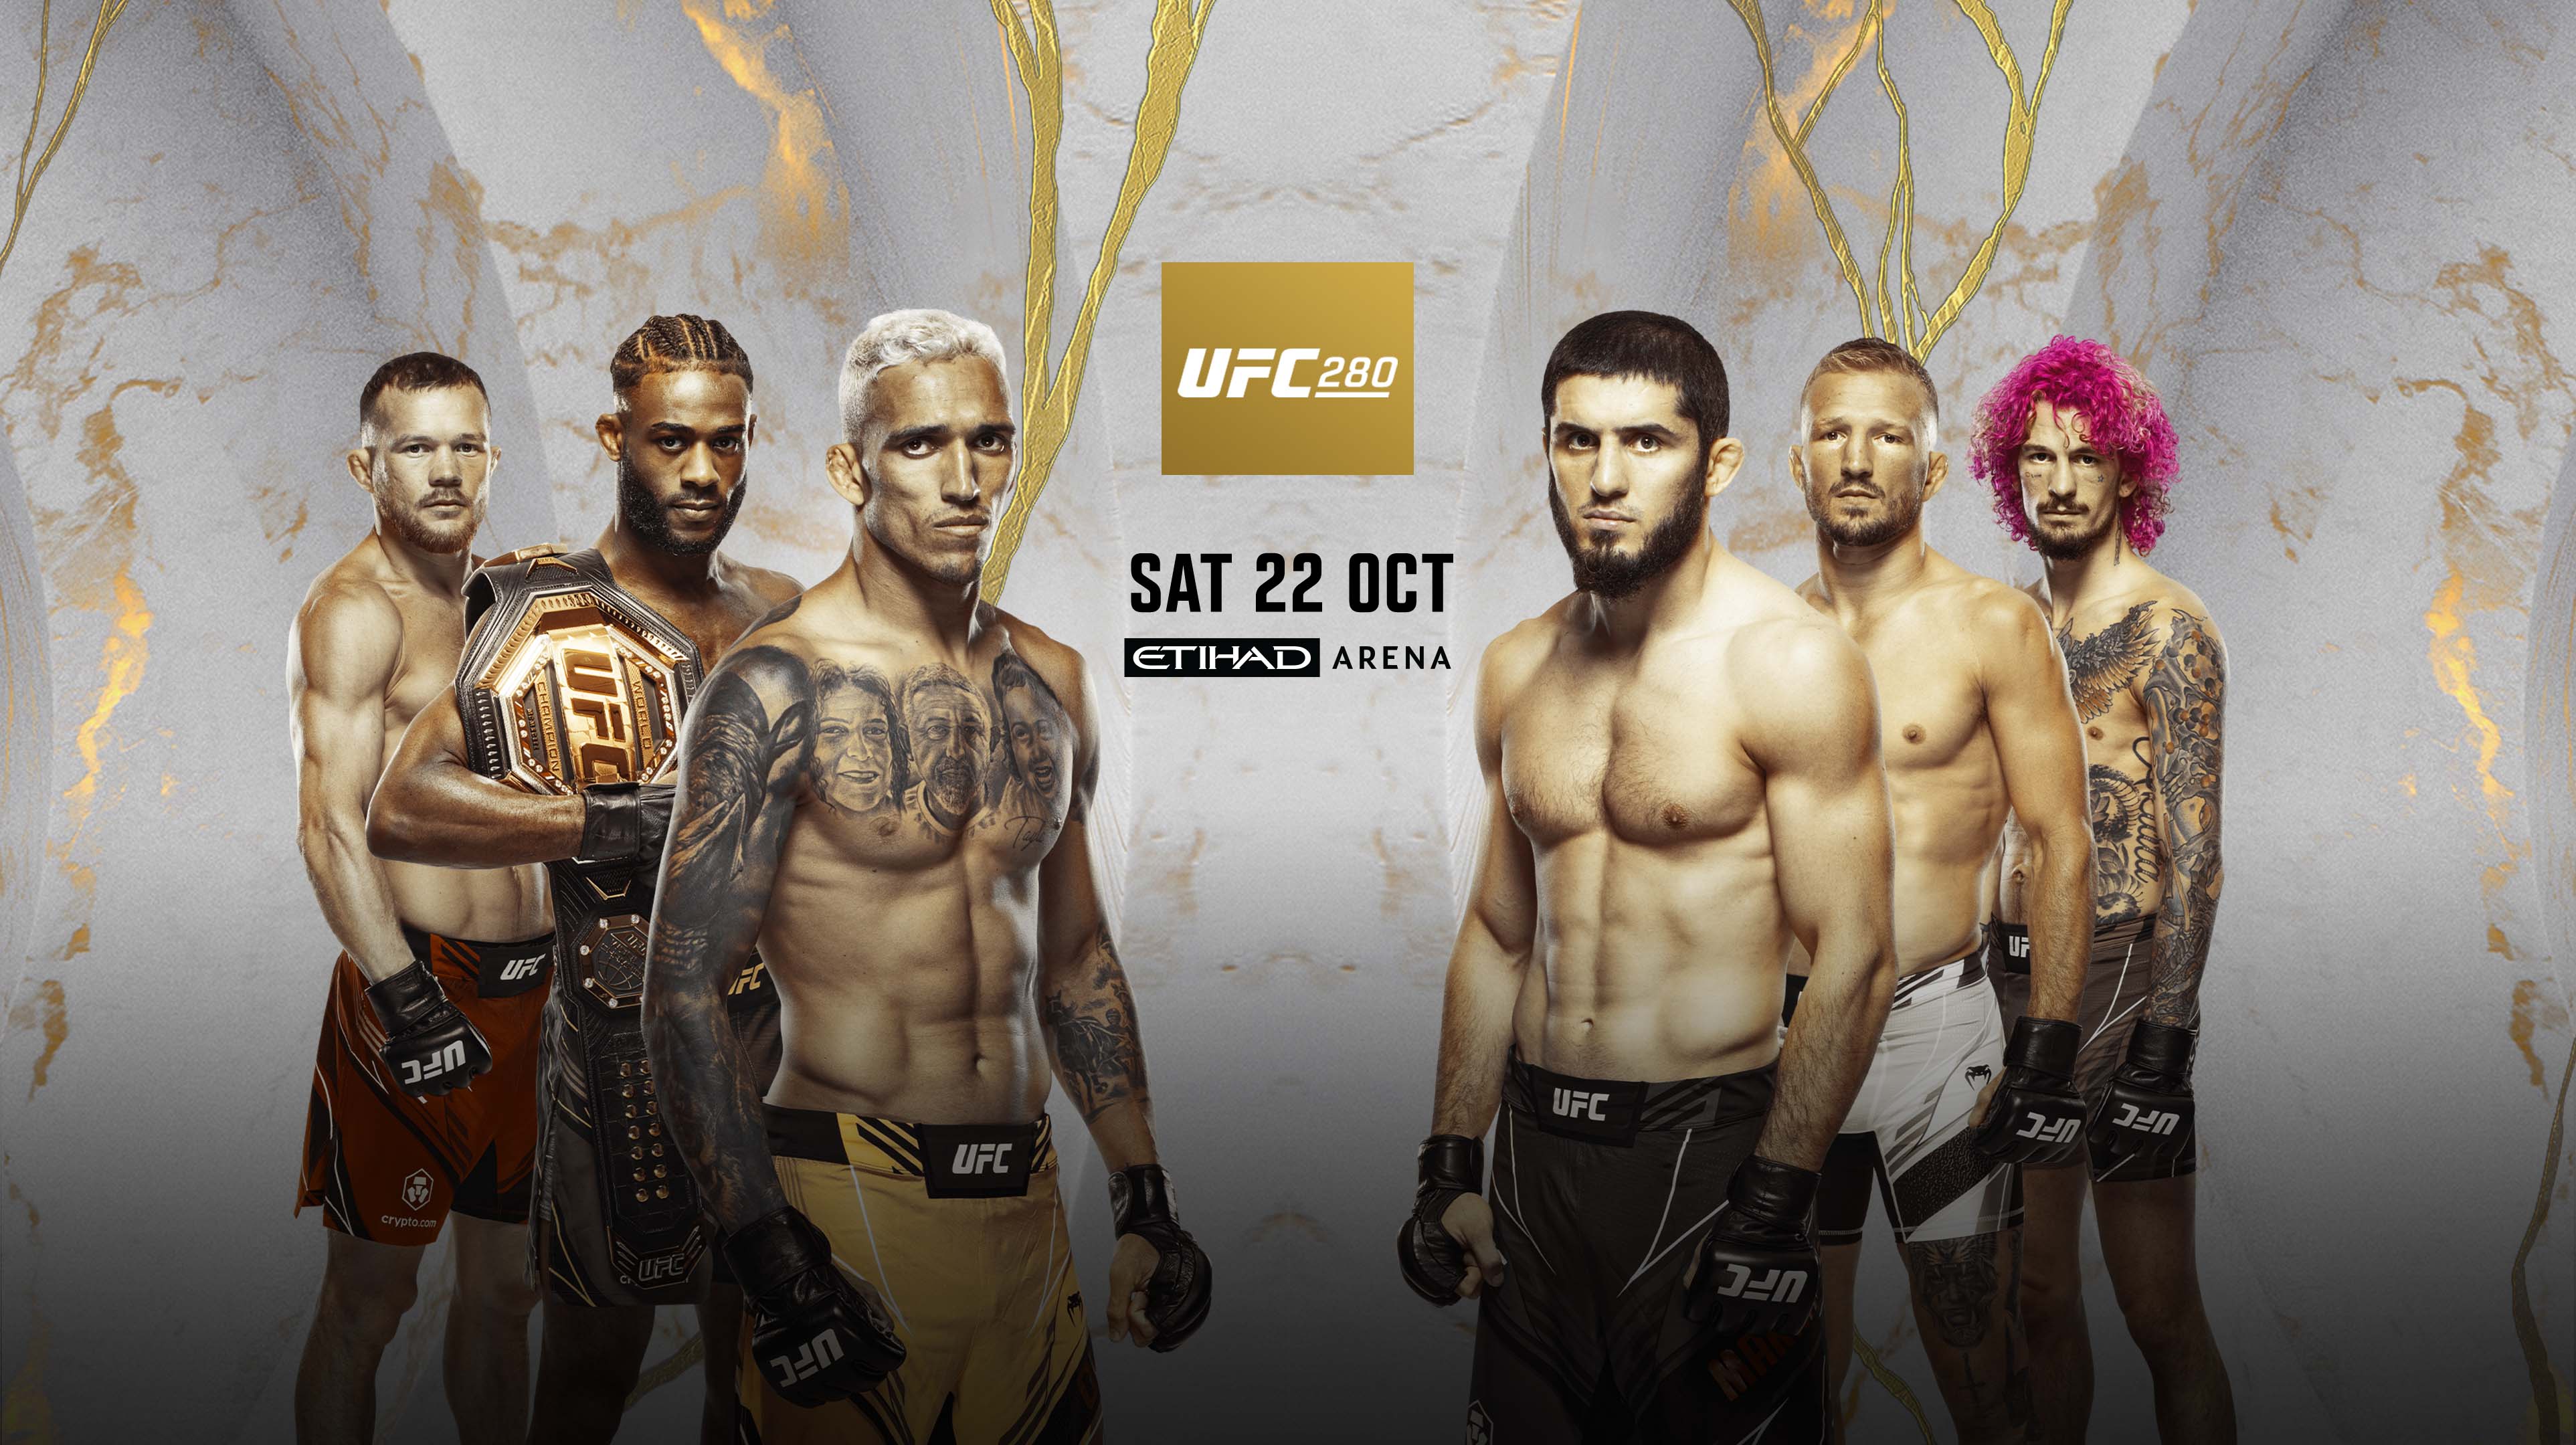 Jadwal UFC 280 Akhir Pekan Ini: Tensi Tinggi Oliveira vs Islam Sampai Sterling vs Dillashaw!